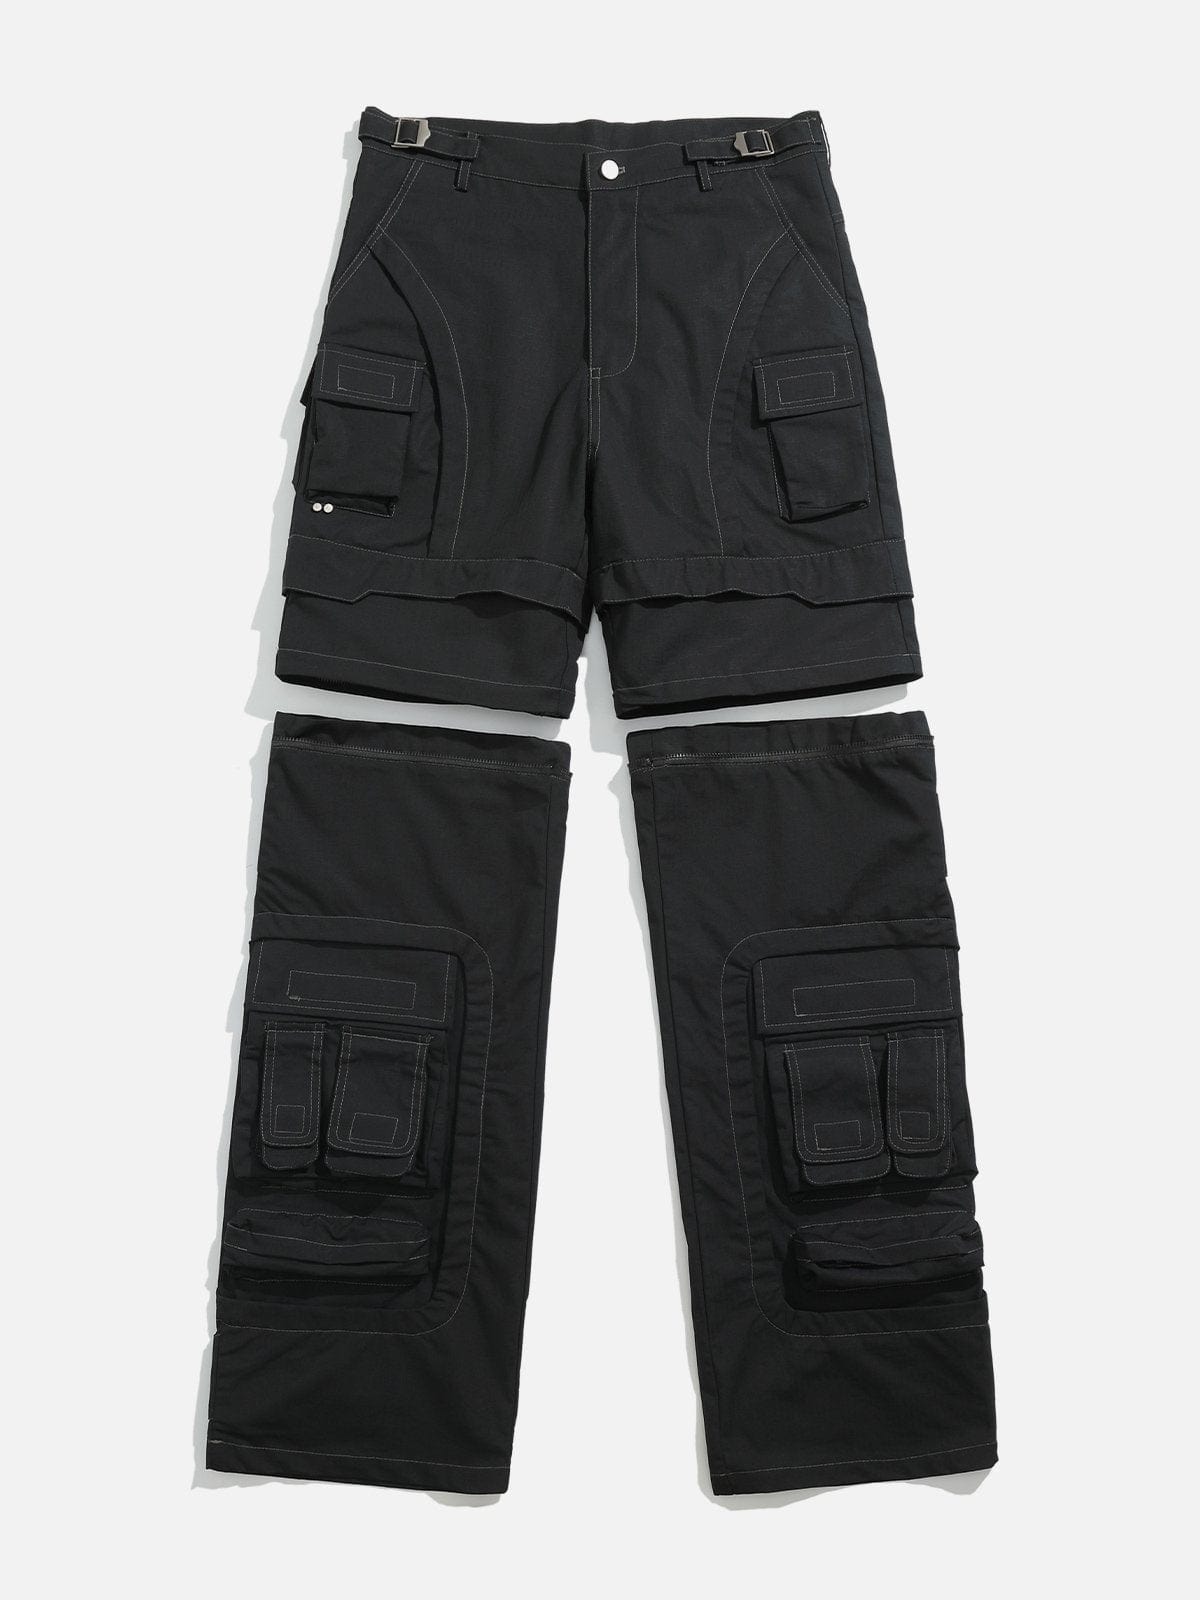 NEV Multifunctional Detachable Pants